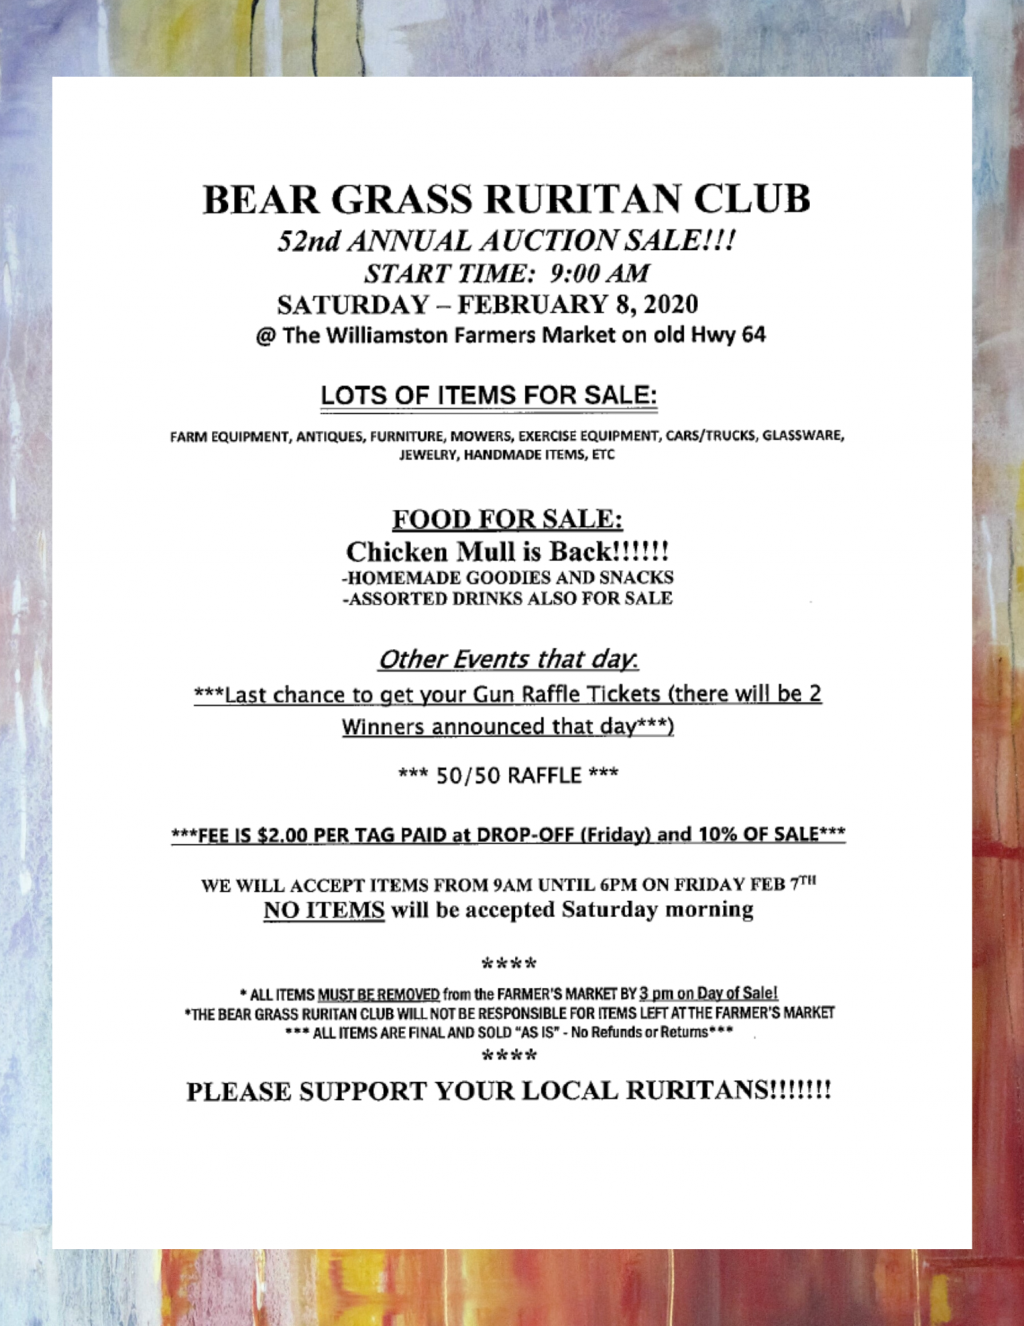 Bear Grass Ruritan Club 52nd Annual Auction Sale Martin County